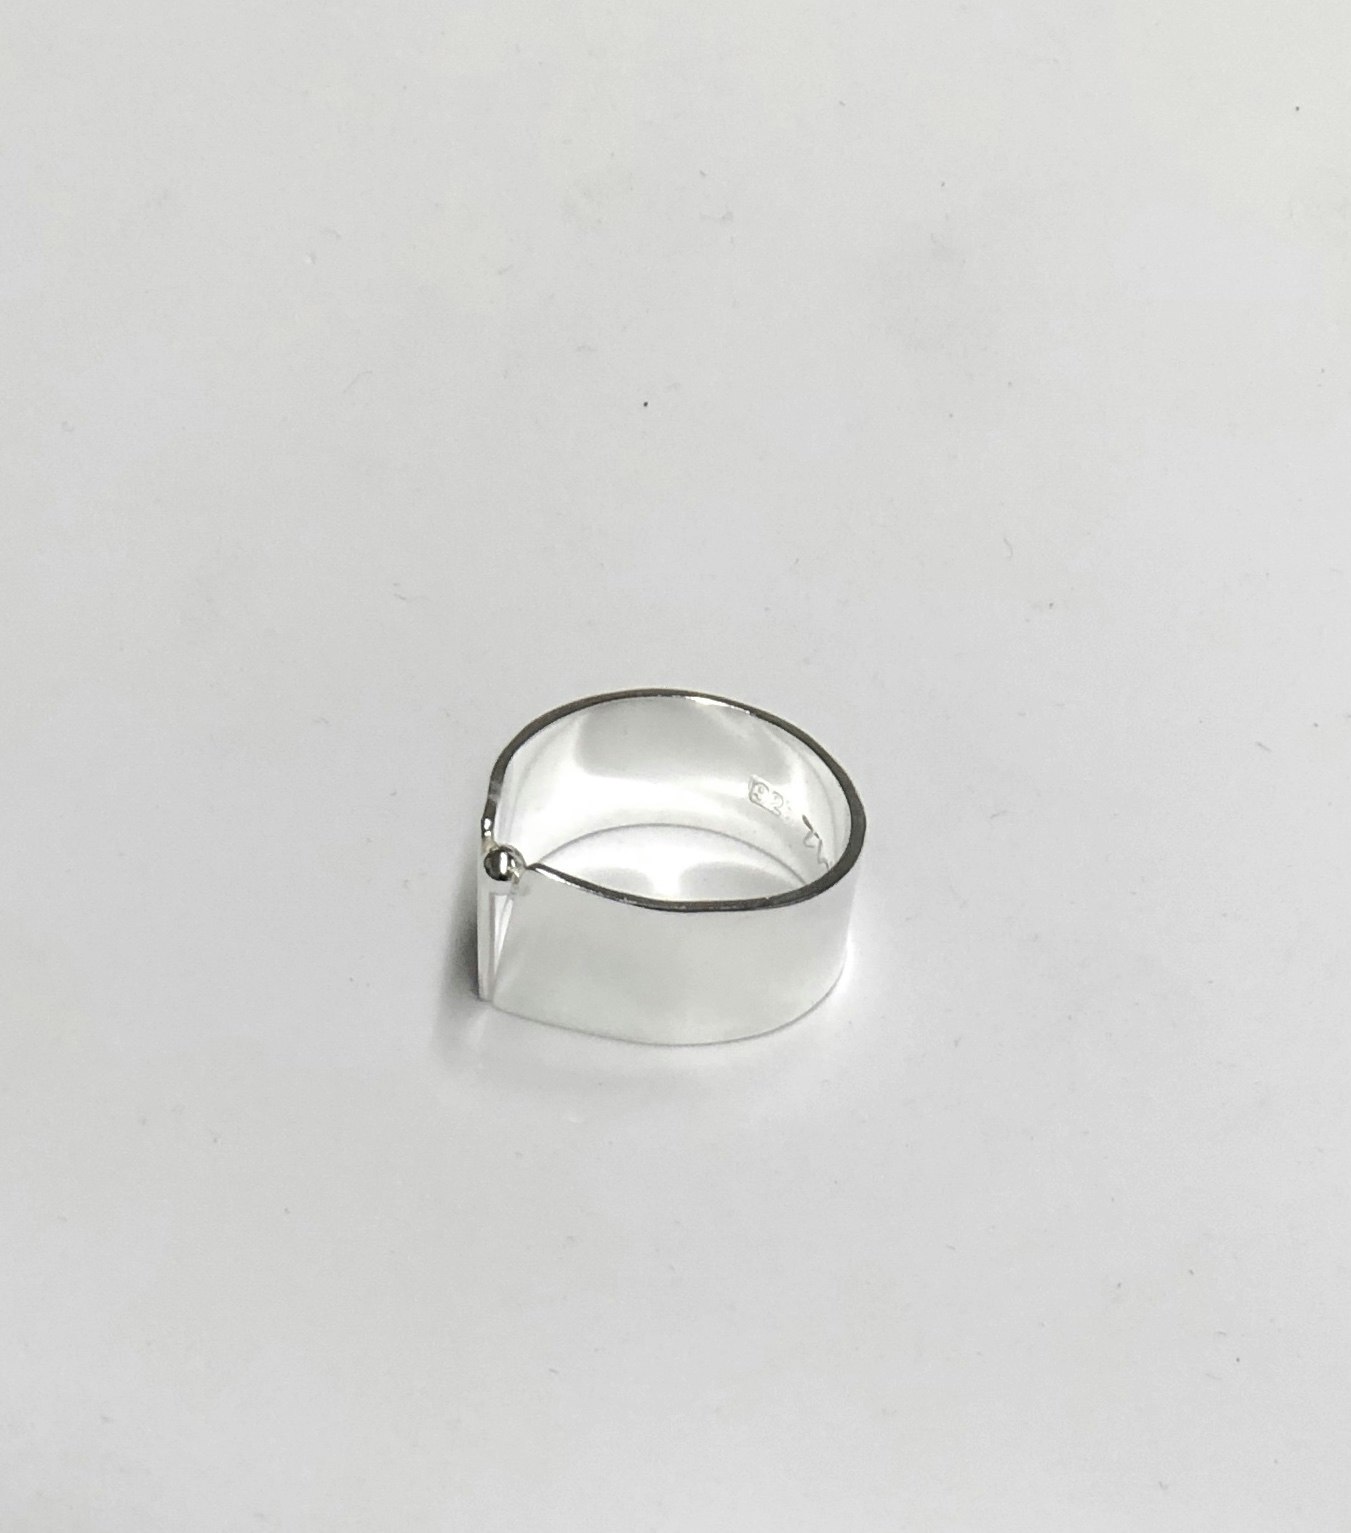 Ring bred med liten silverkula